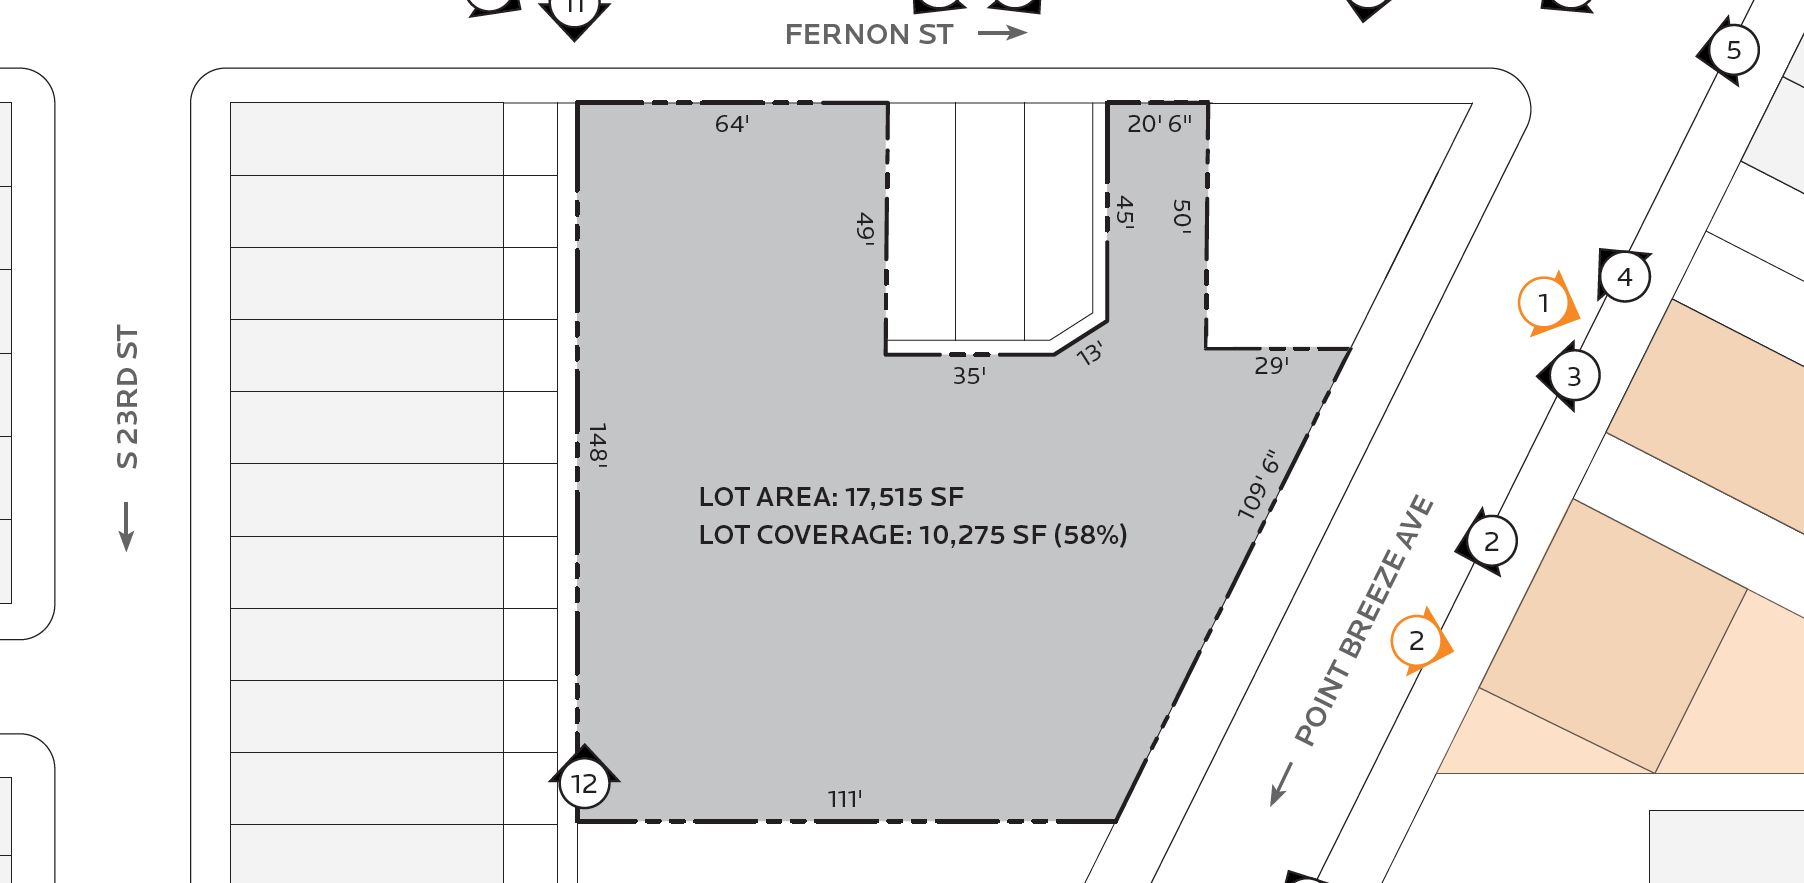 1622-40 Point Breeze Avenue. Site plan. Credit: JKRP Architects via the Civic Design Review